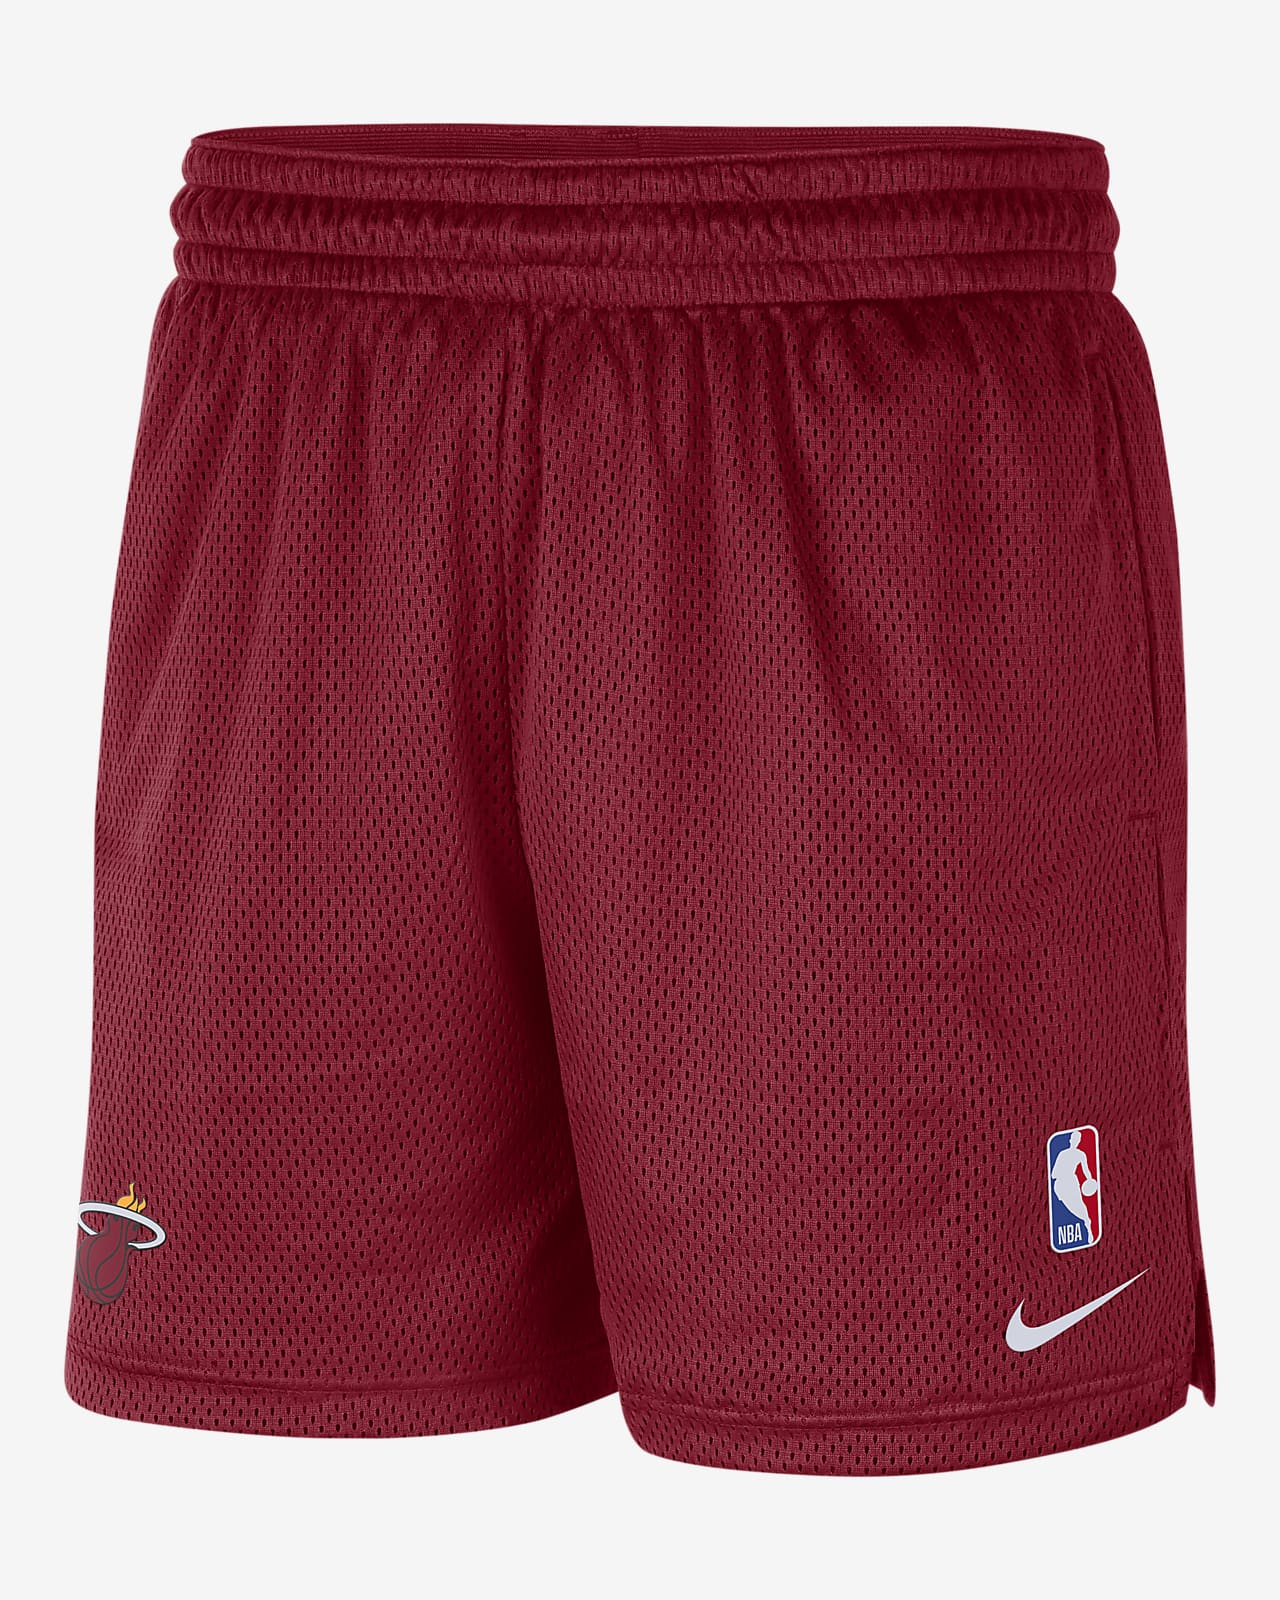 Shorts Nike NBA para hombre Miami Heat